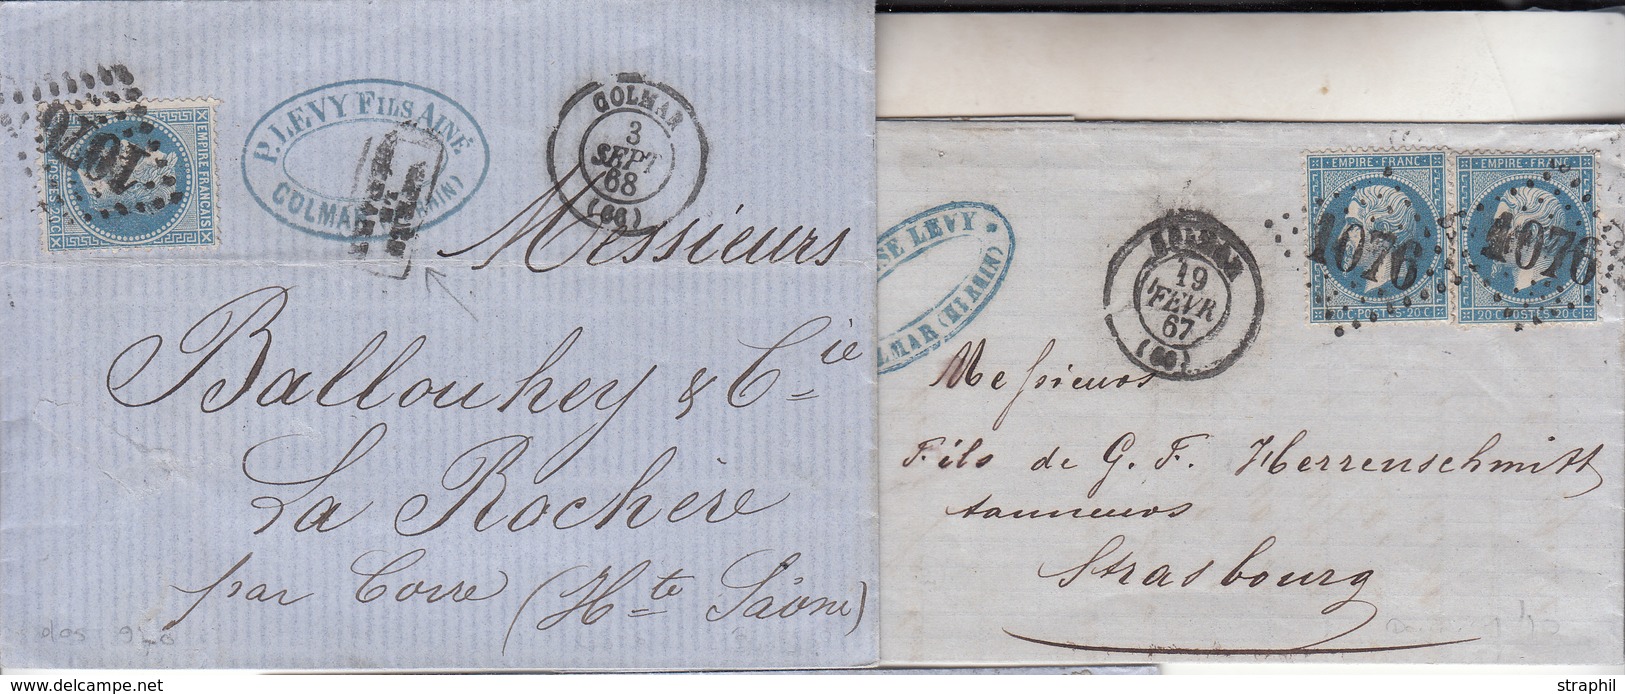 LAC 2 Plis Colmar - Datés 1867, 1868 (Dble Port) - TB - Lettres & Documents